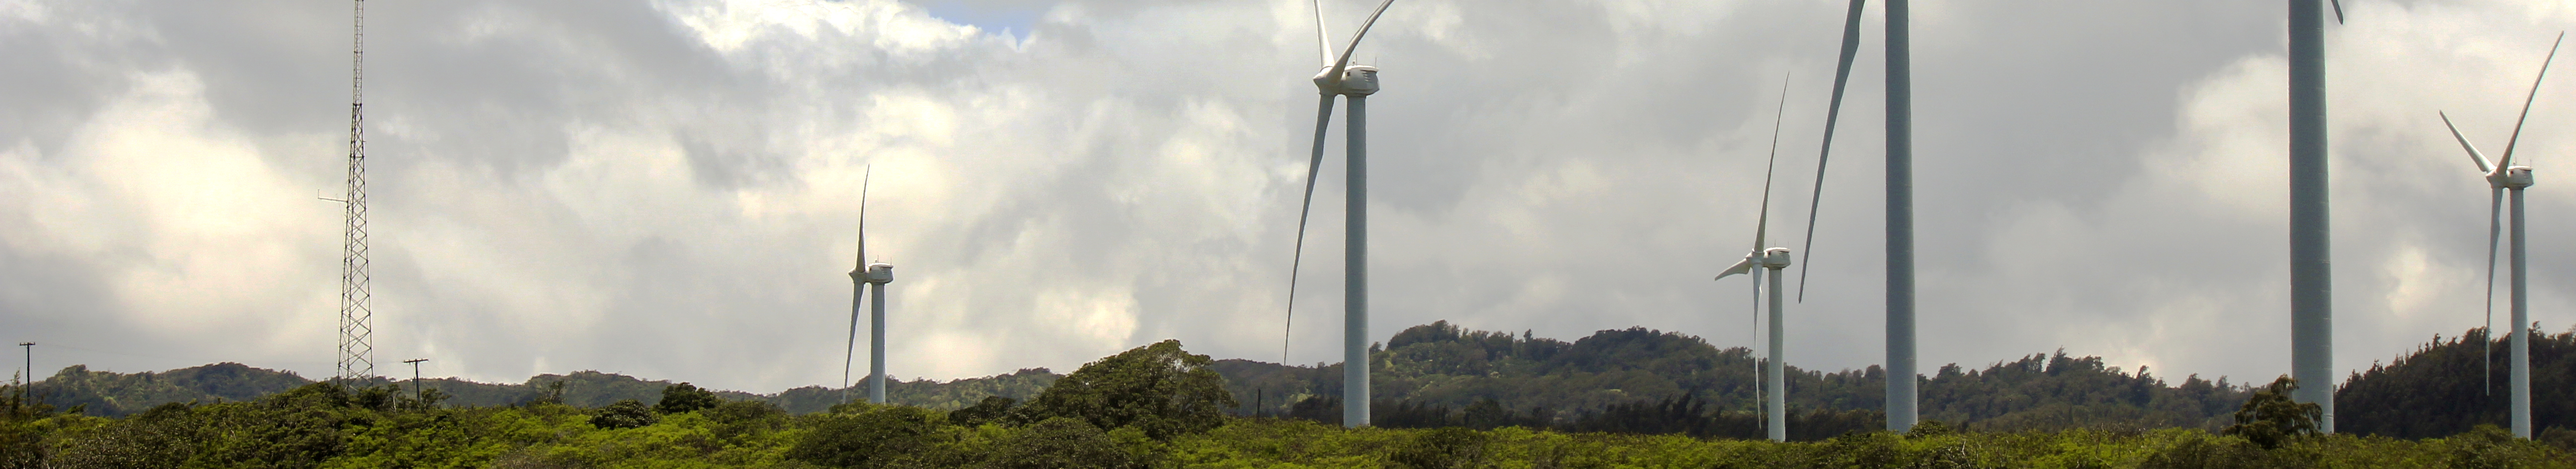 Windenergie Systeme zur Standortbewertung und Überwachung von Windkraftanlagen